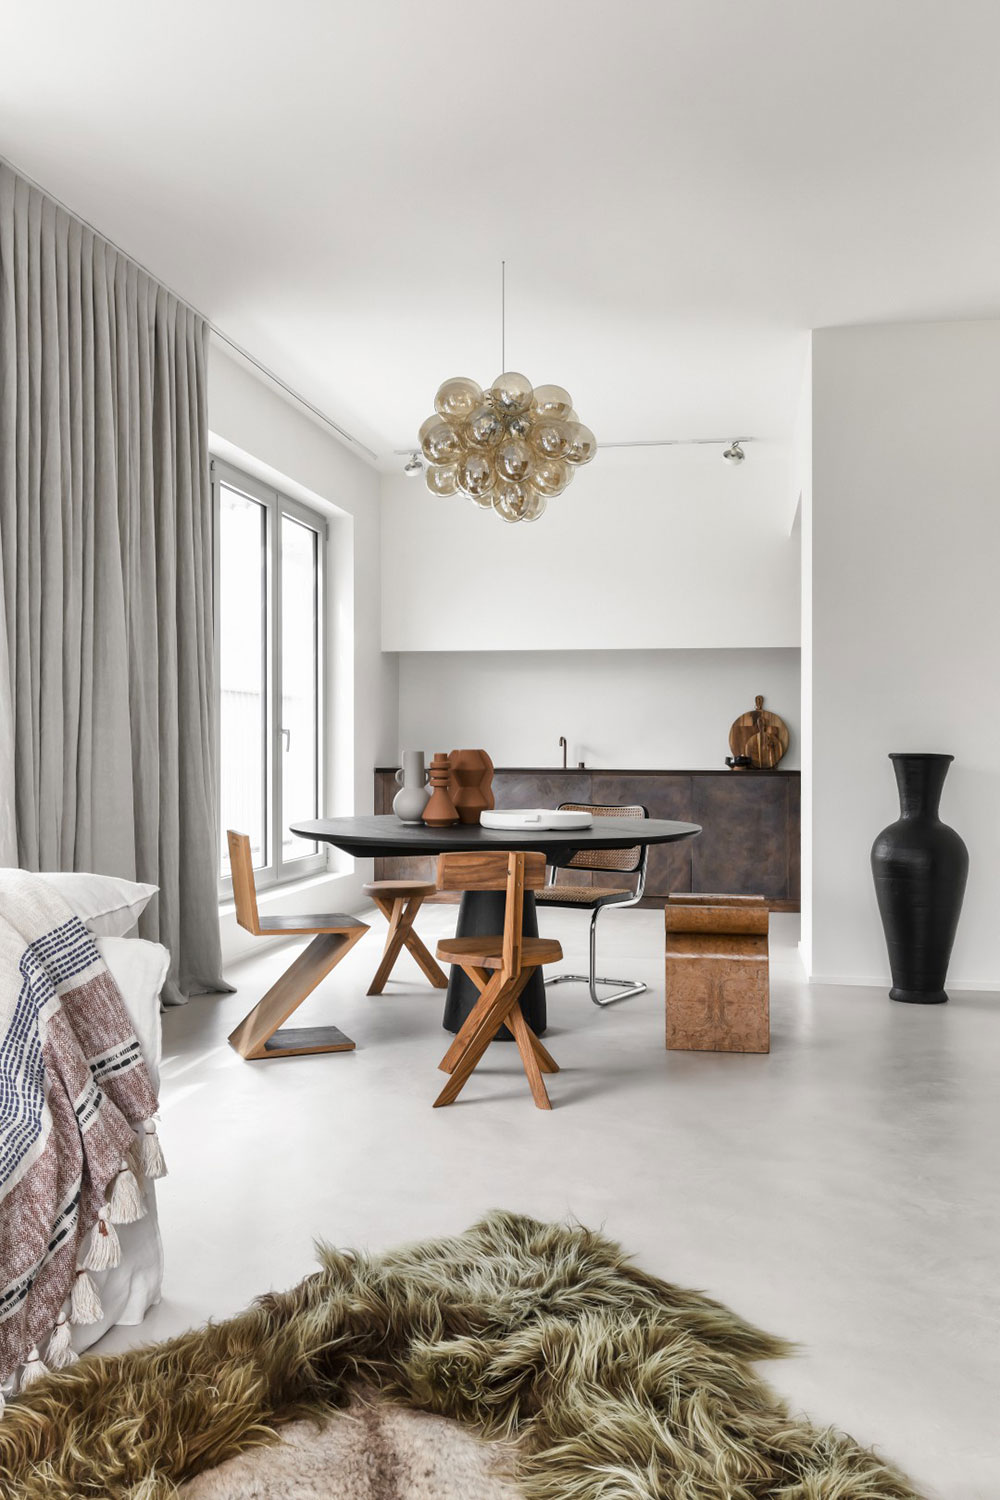 AE Studio,比利時,極簡主義,公寓設計案例,極簡風格,極簡公寓,國外公寓設計,公寓設計方案